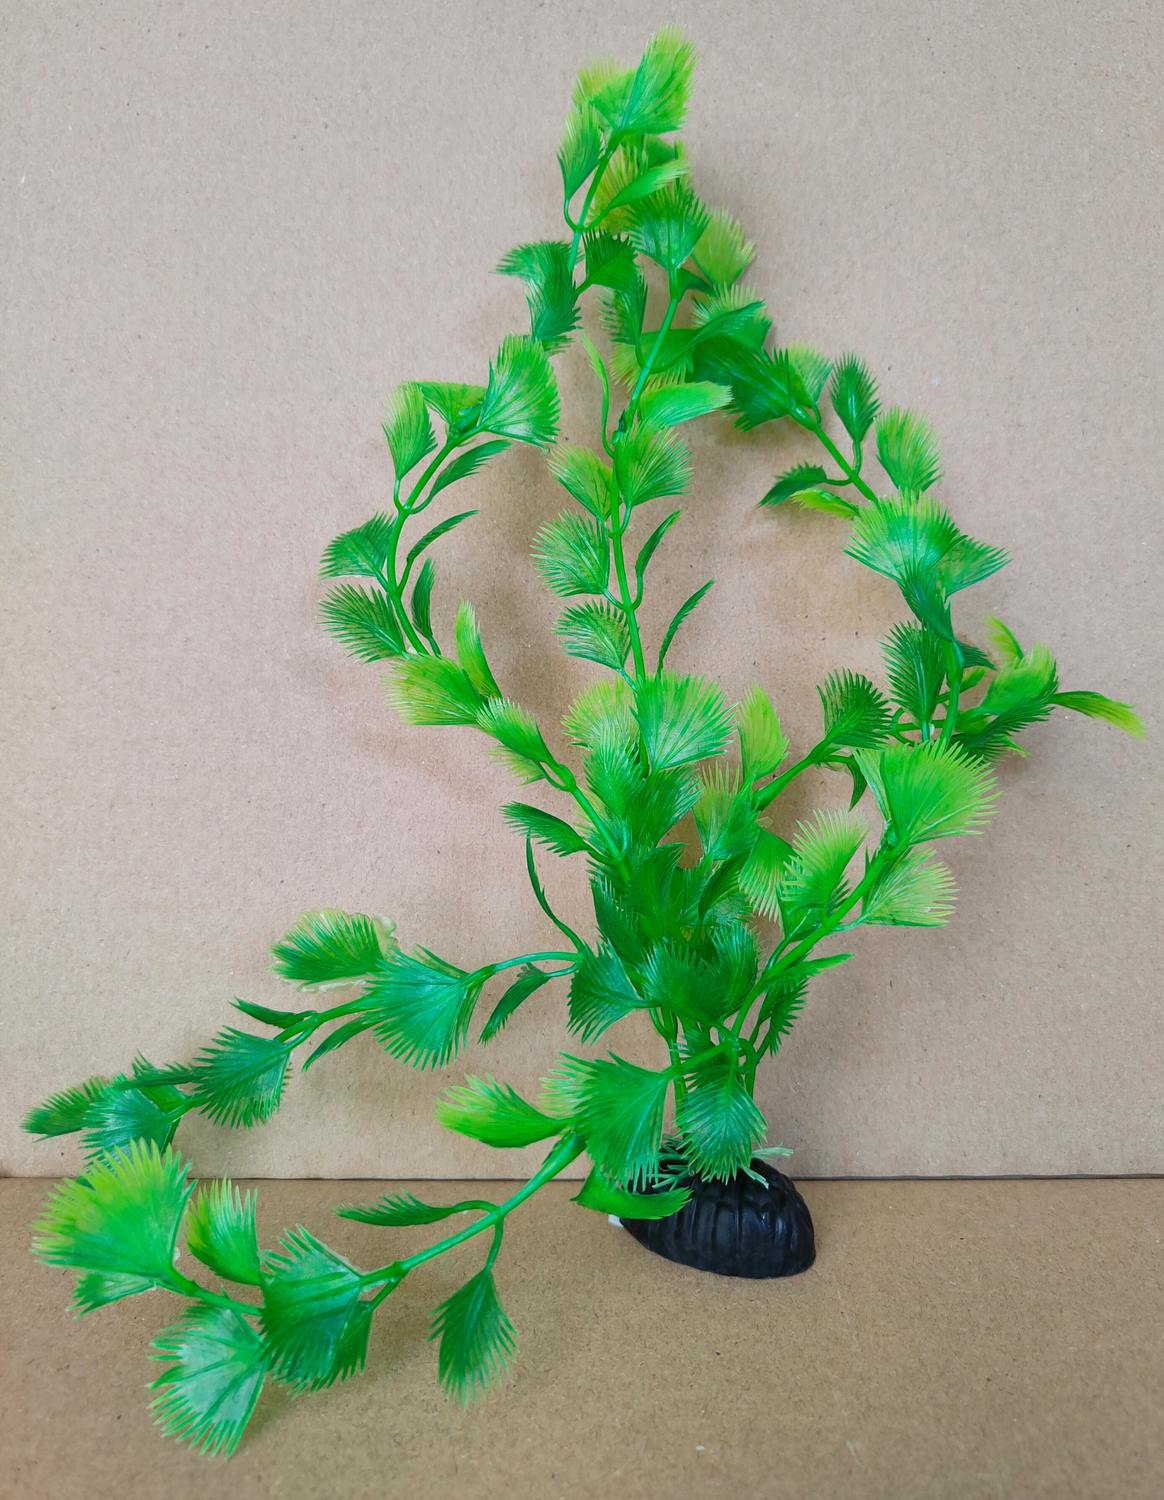 Alga verde cu tulpină lungă și frunze spinoase, plantă artificială pentru acvariu